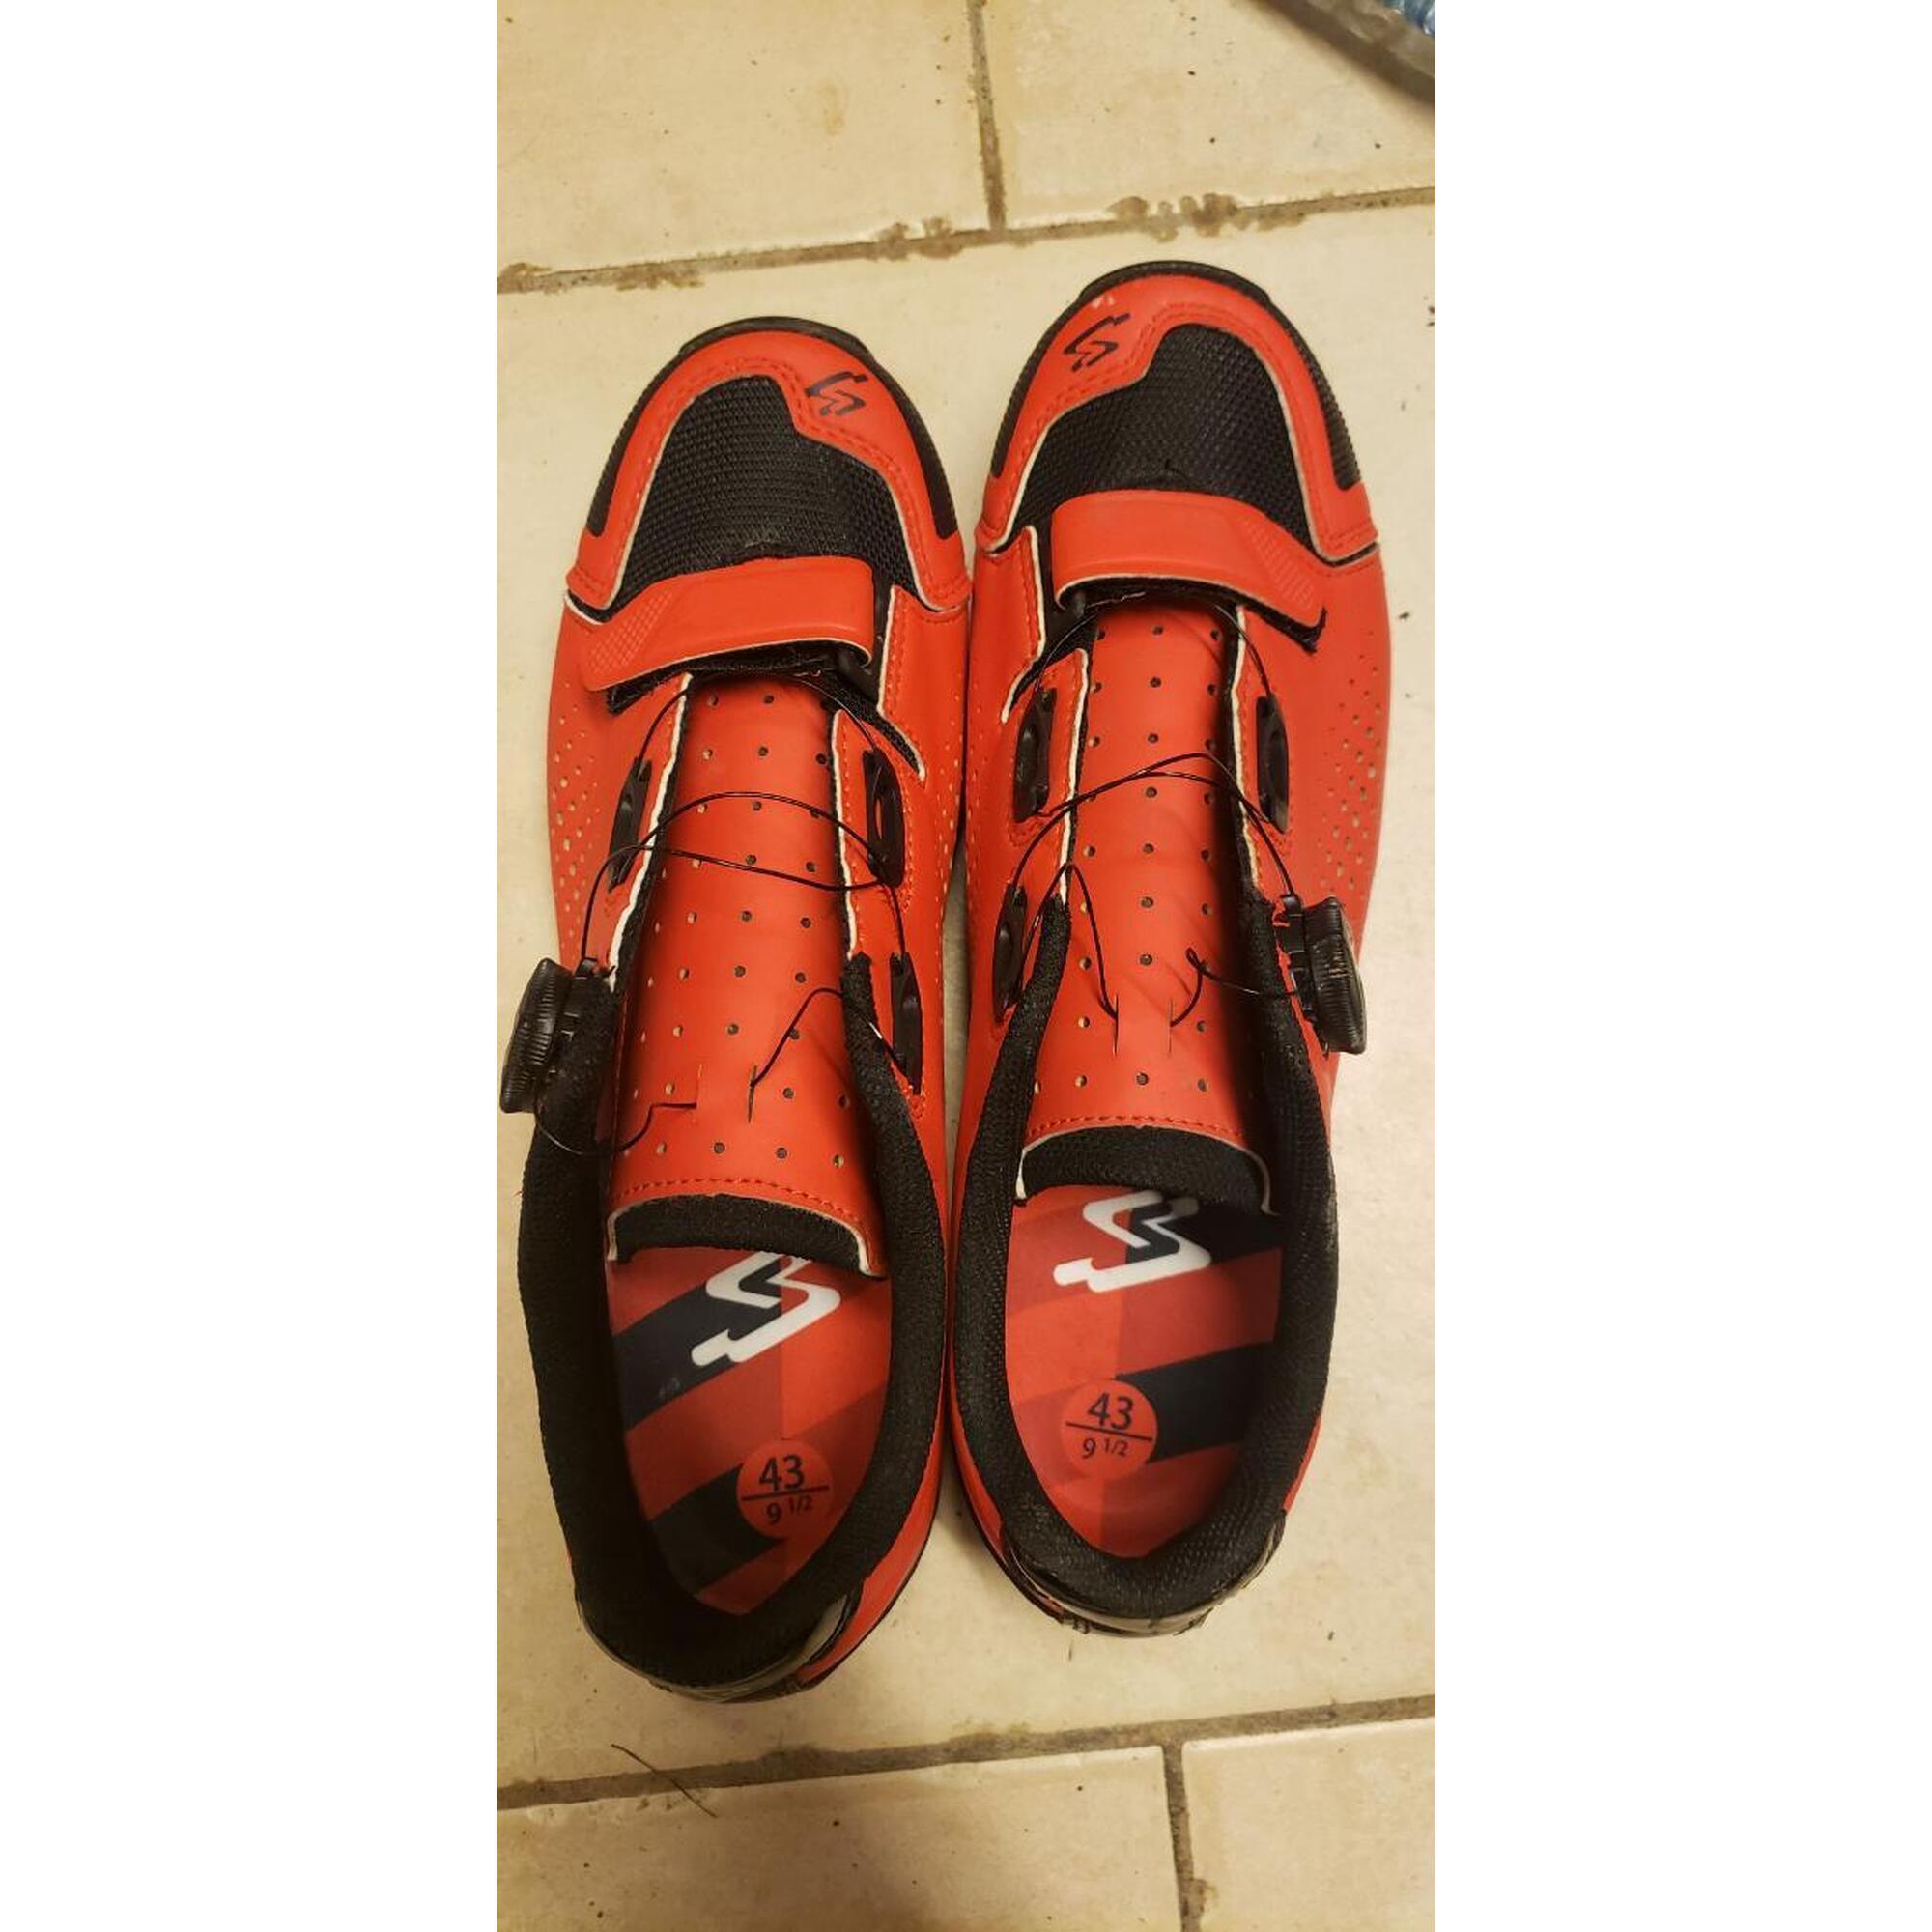 C2C - Chaussures Spiuk vtt/gravel rouge